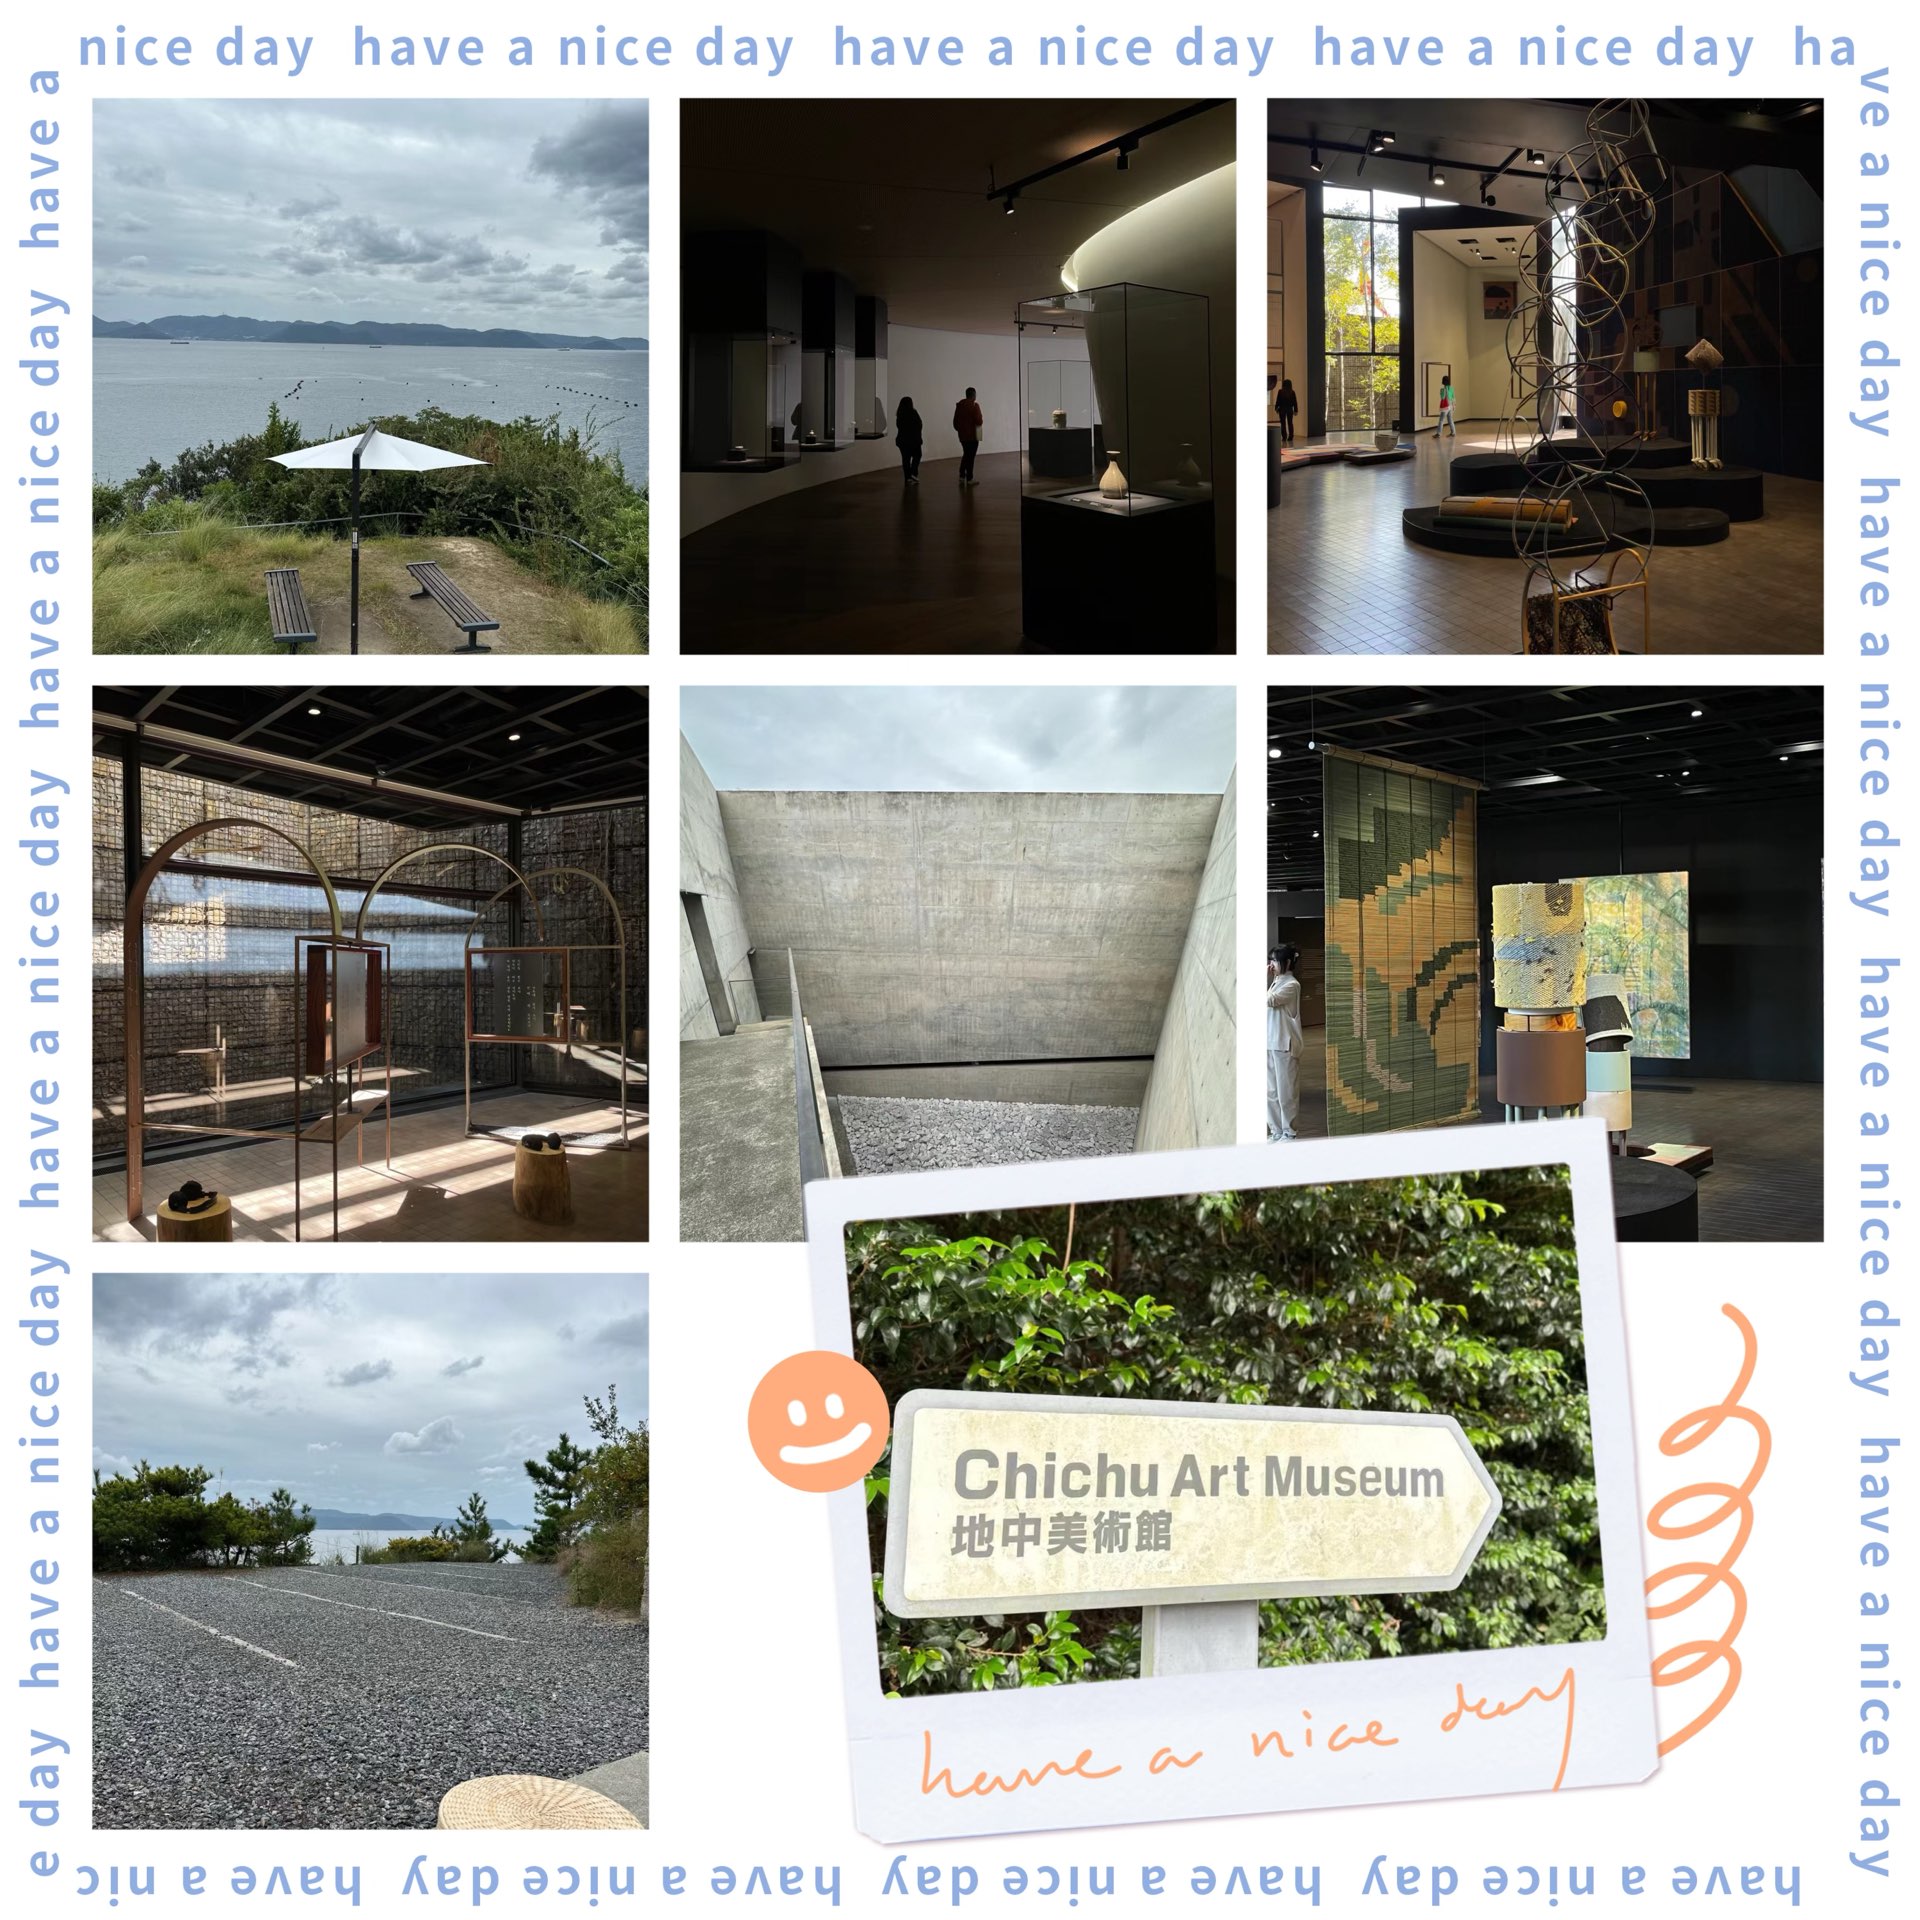 地中美术馆～海滨清水风格建筑与现代艺术品相遇！🏛️🌊🎨